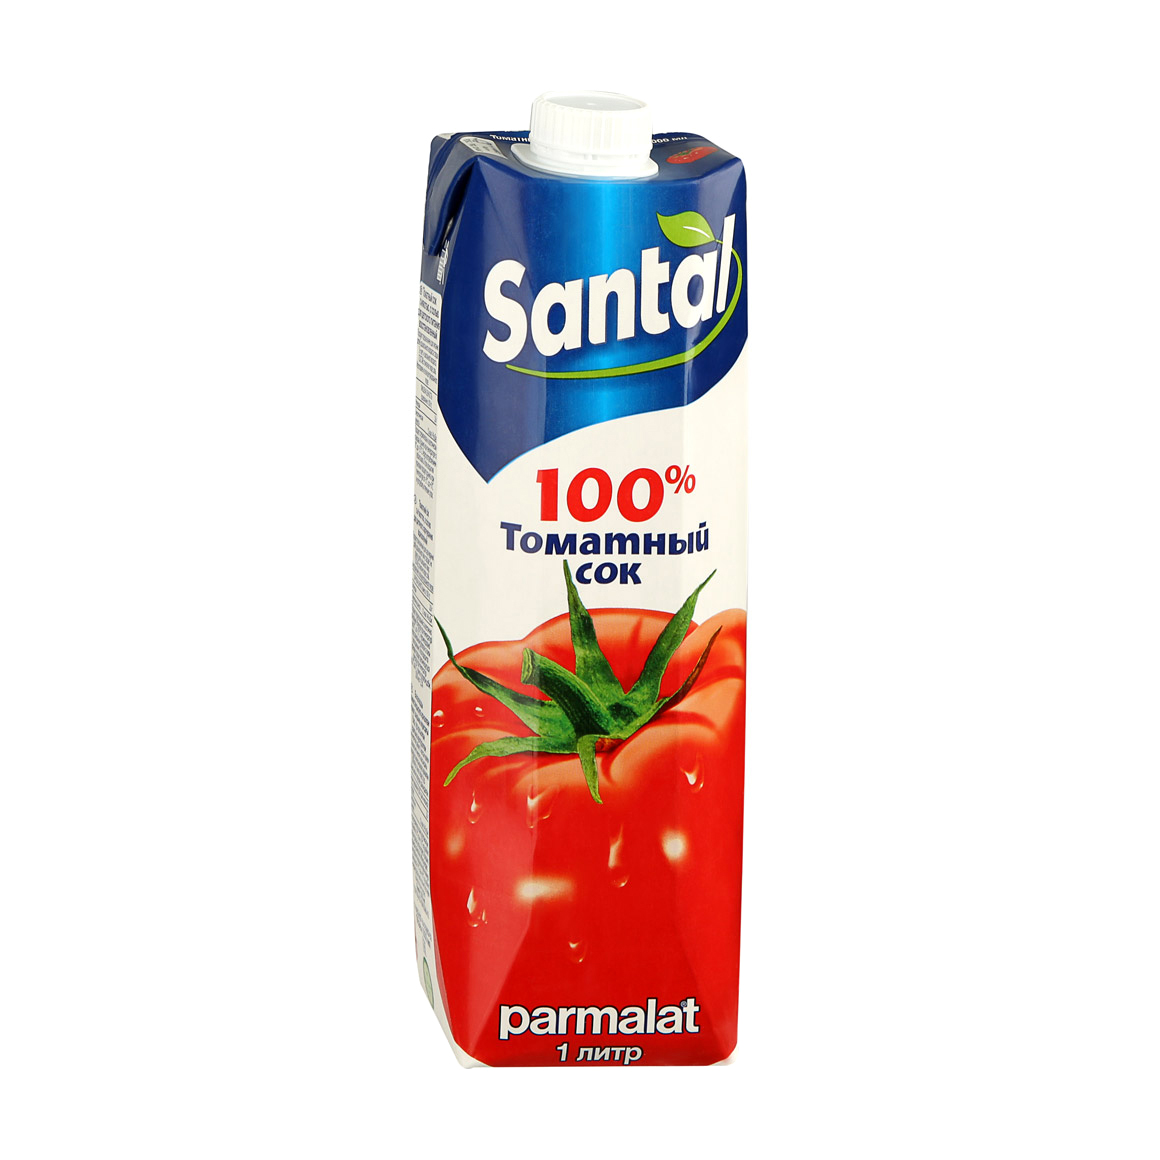 Сок Santal томатный 100% 1 л сок santal апельсиновый 100% 1 л